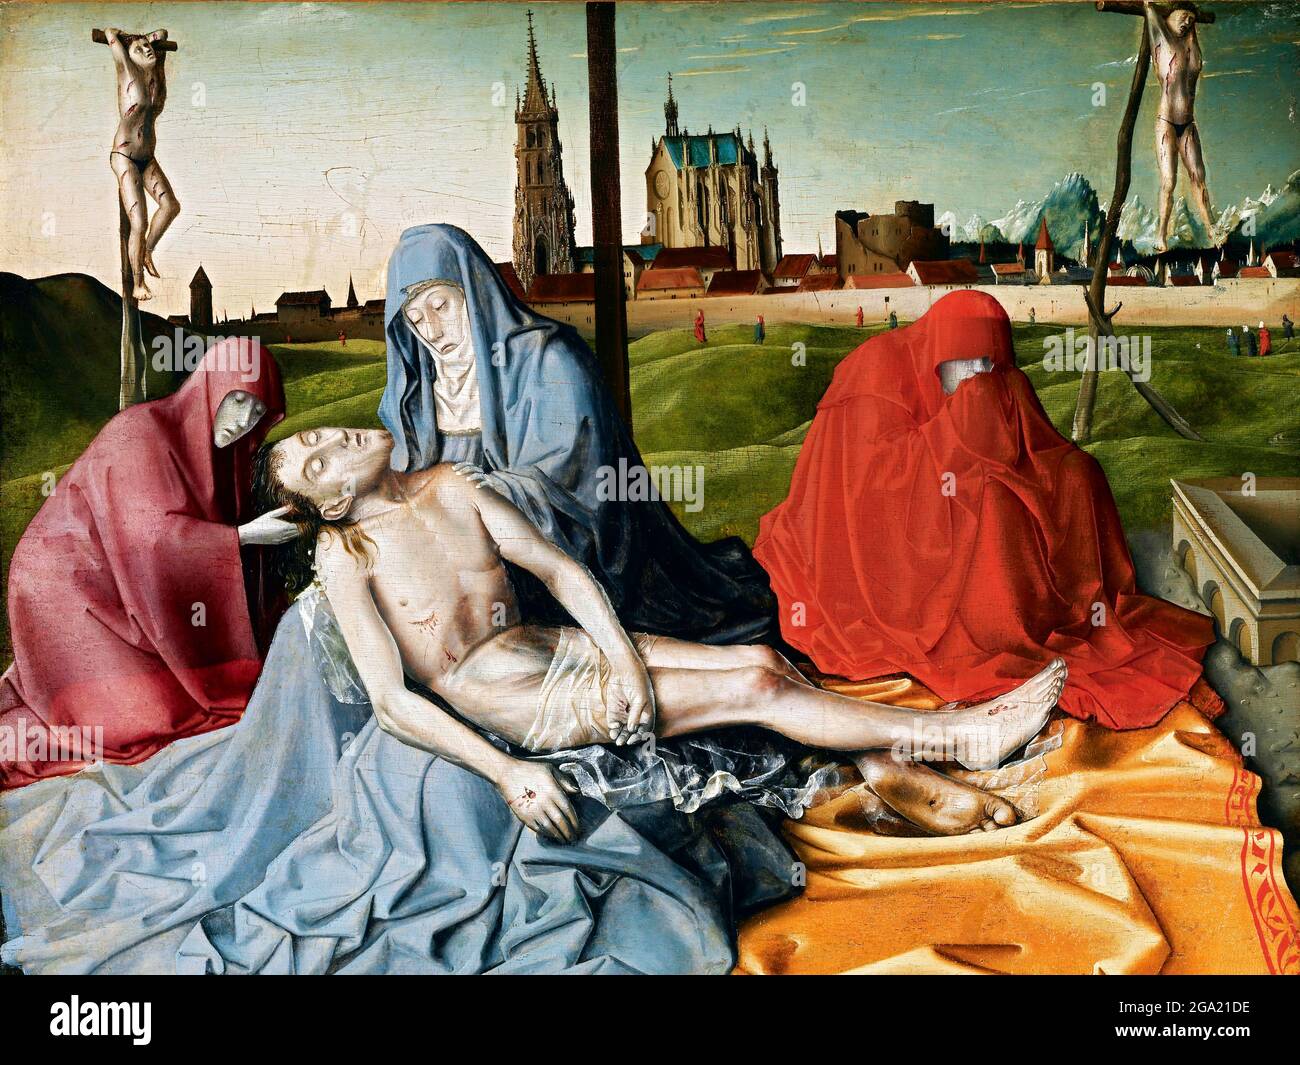 Pietà par Konrad Witz (1400/1410 -1445/1446), tempera et huile sur panneau, c. 1440 Banque D'Images